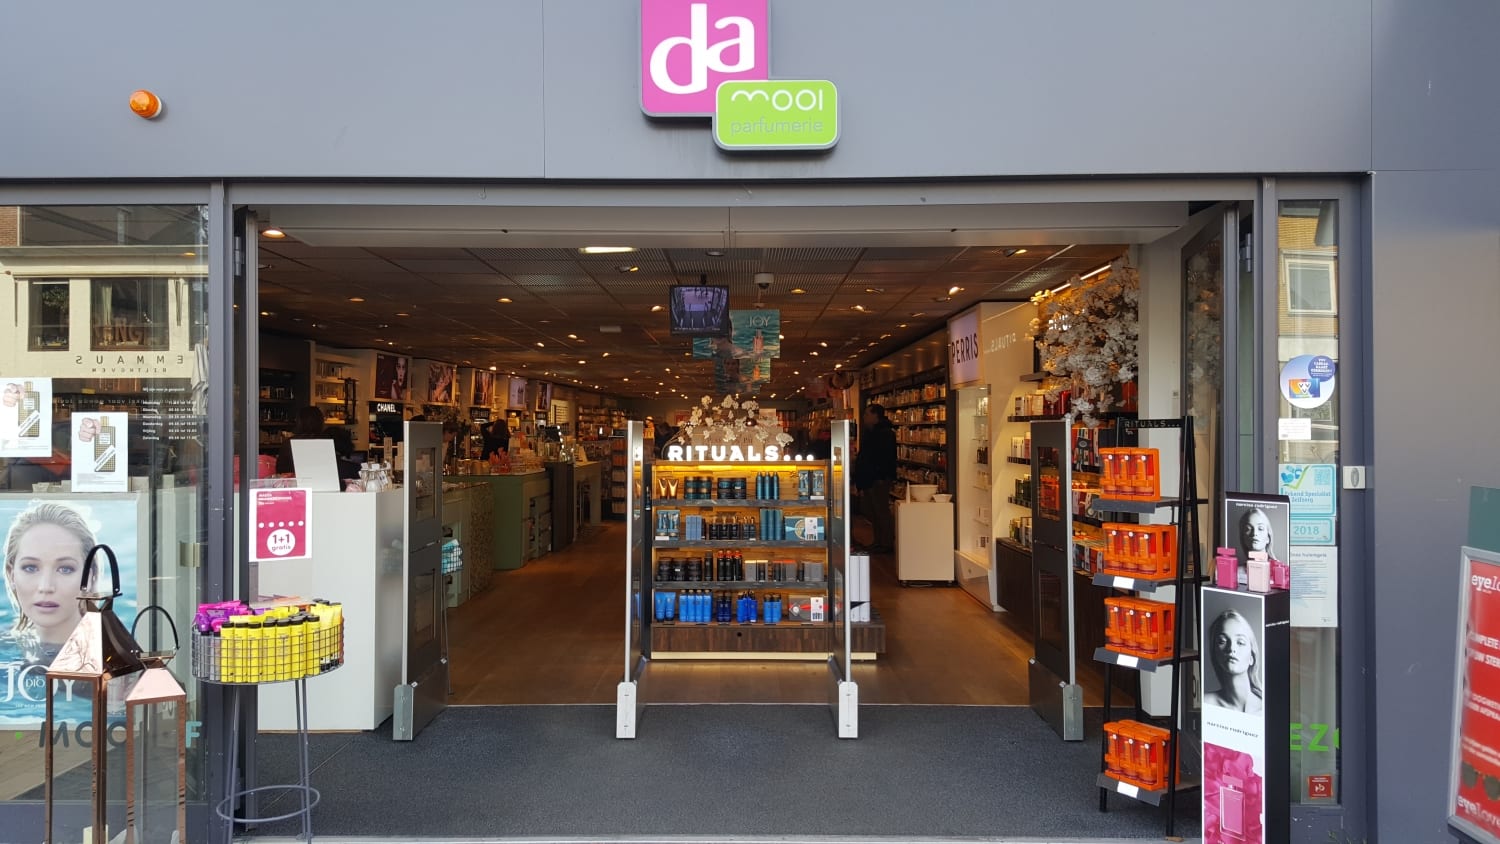 DA - Mooi - Frits - Bilthoven - parfumerie - drogisterij - artikelbeveiliging - productbeveiliging - detectiepoortjes - EM - TAGIT - Premium Light - cosmetica - parfum - beveiligingslabels - discreet - transparant